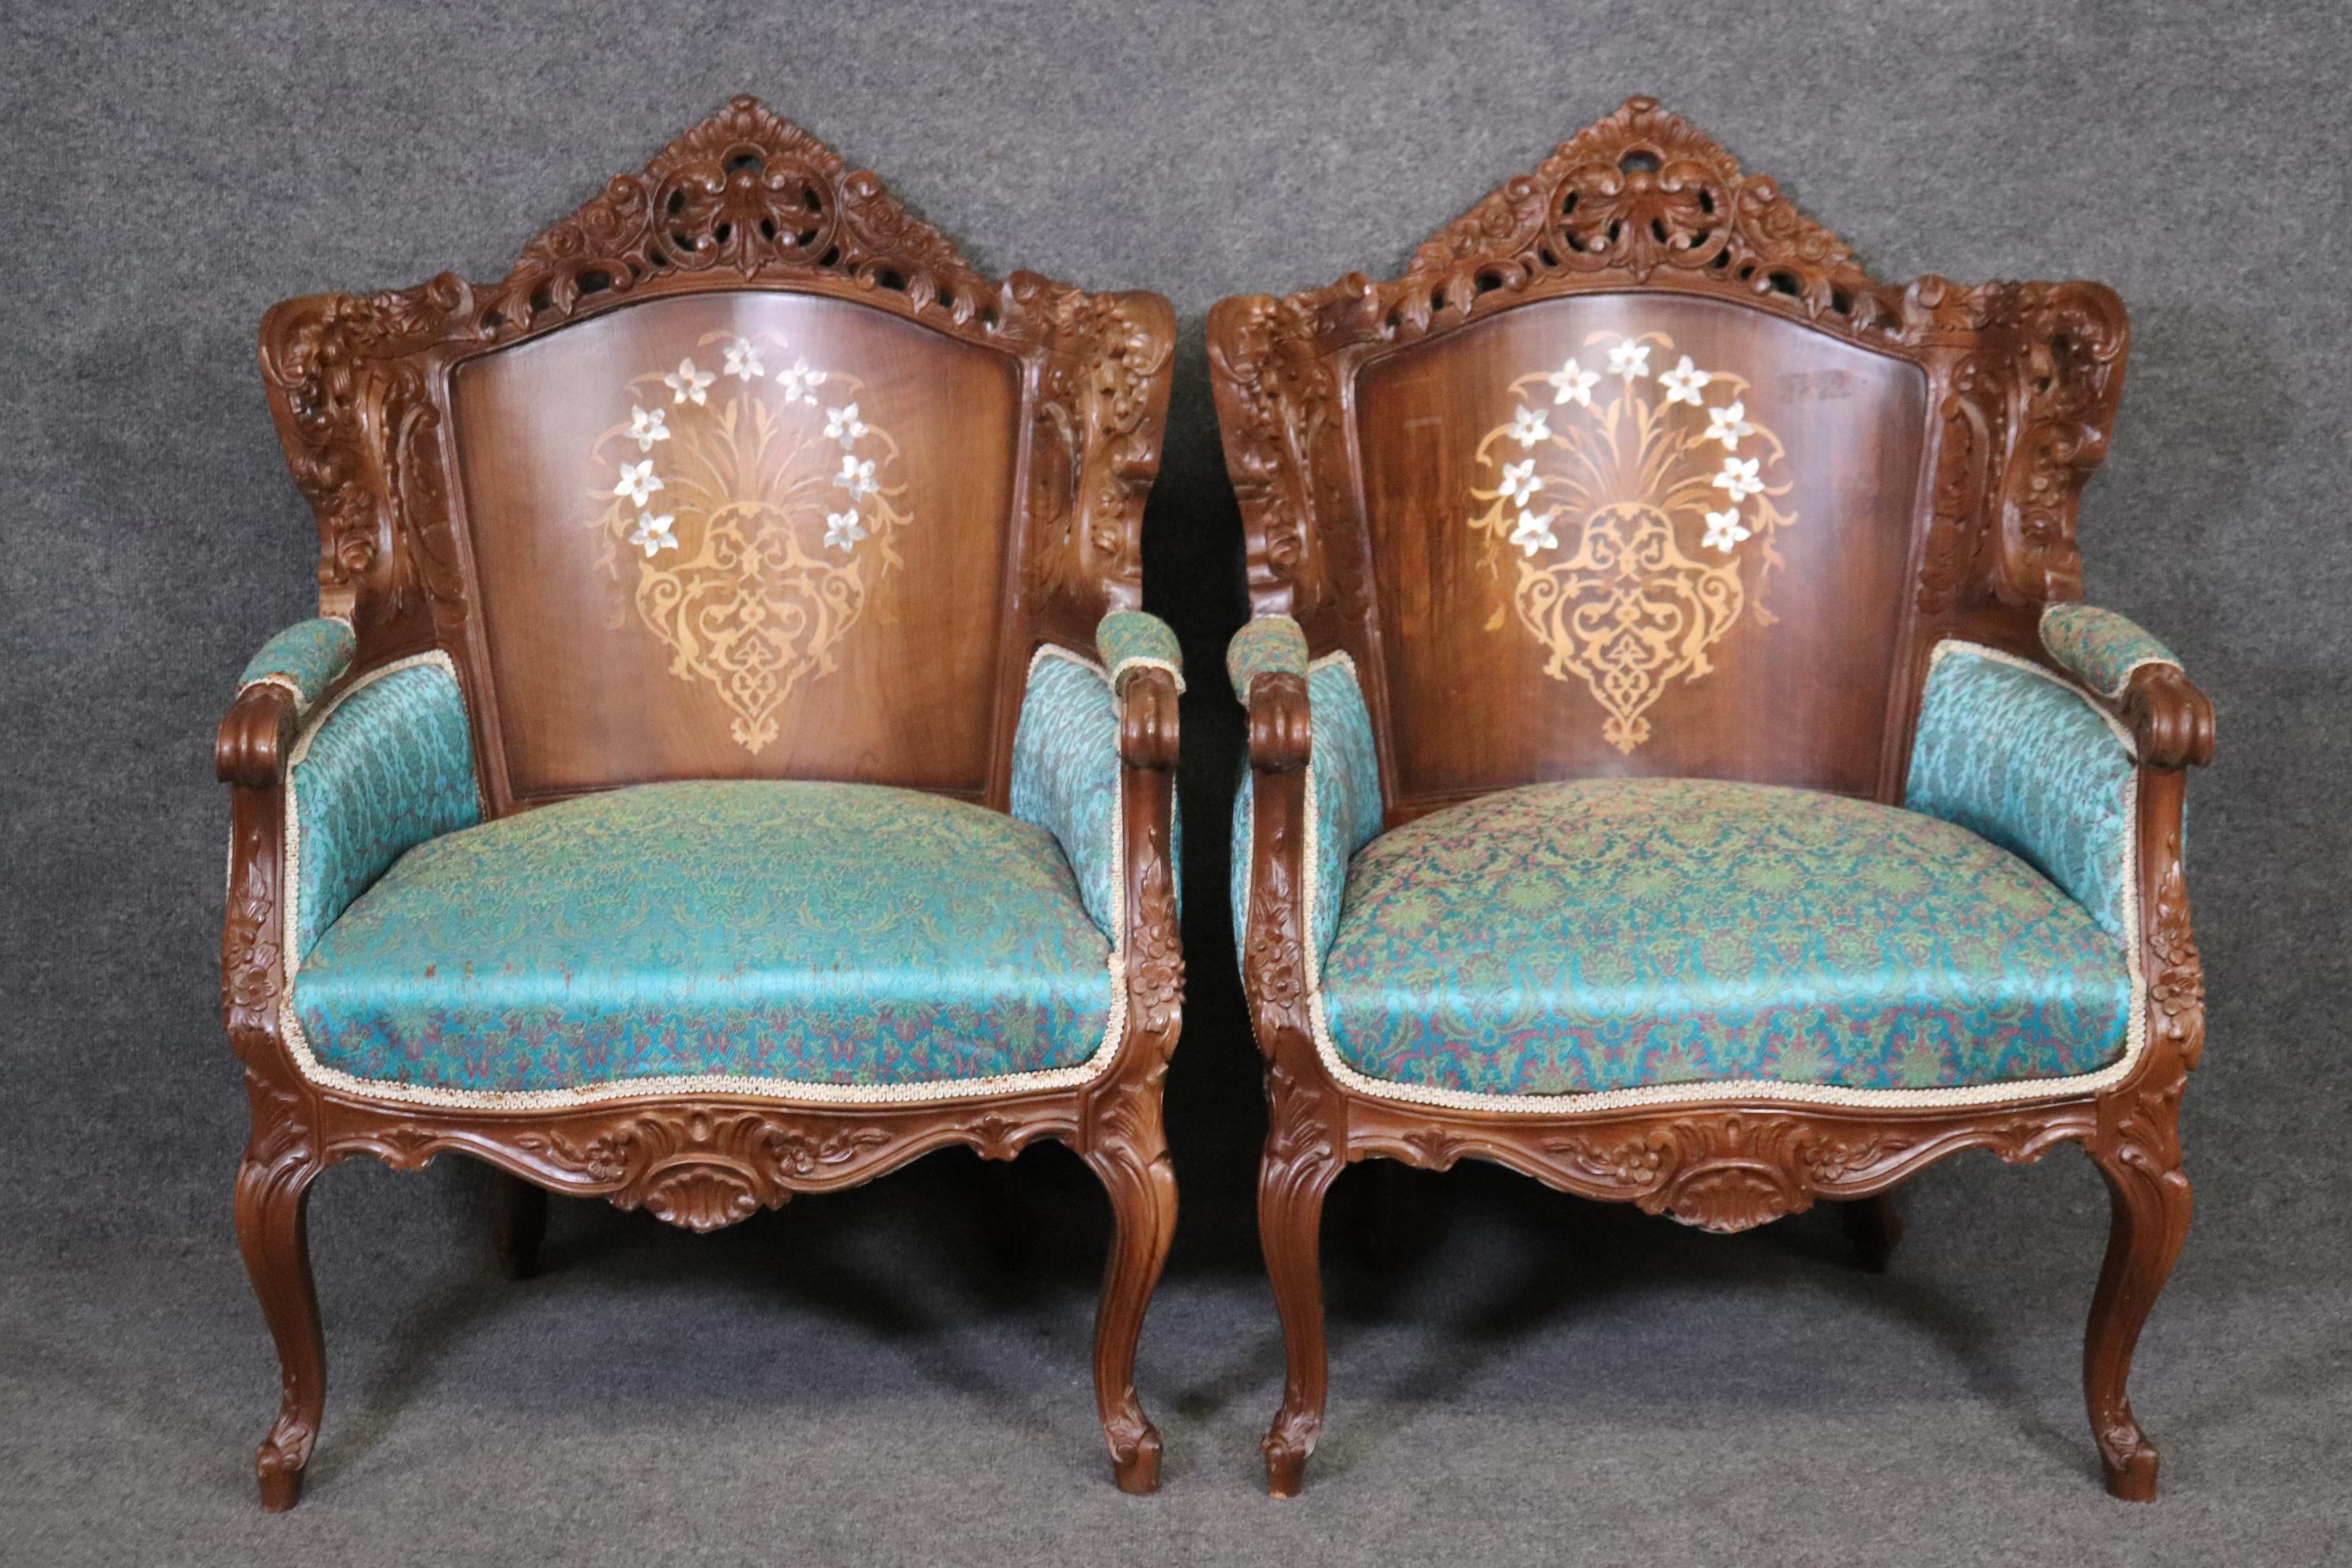 Dimensions- H : 39 1/4in W : 27 3/4in D : 28in SH : 18 1/2in 
Cette paire de fauteuils bergeres sculptés de style Louis XV avec décoration en nacre est vraiment unique et une jolie paire de fauteuils qui sont parfaits si vous cherchez à apporter un